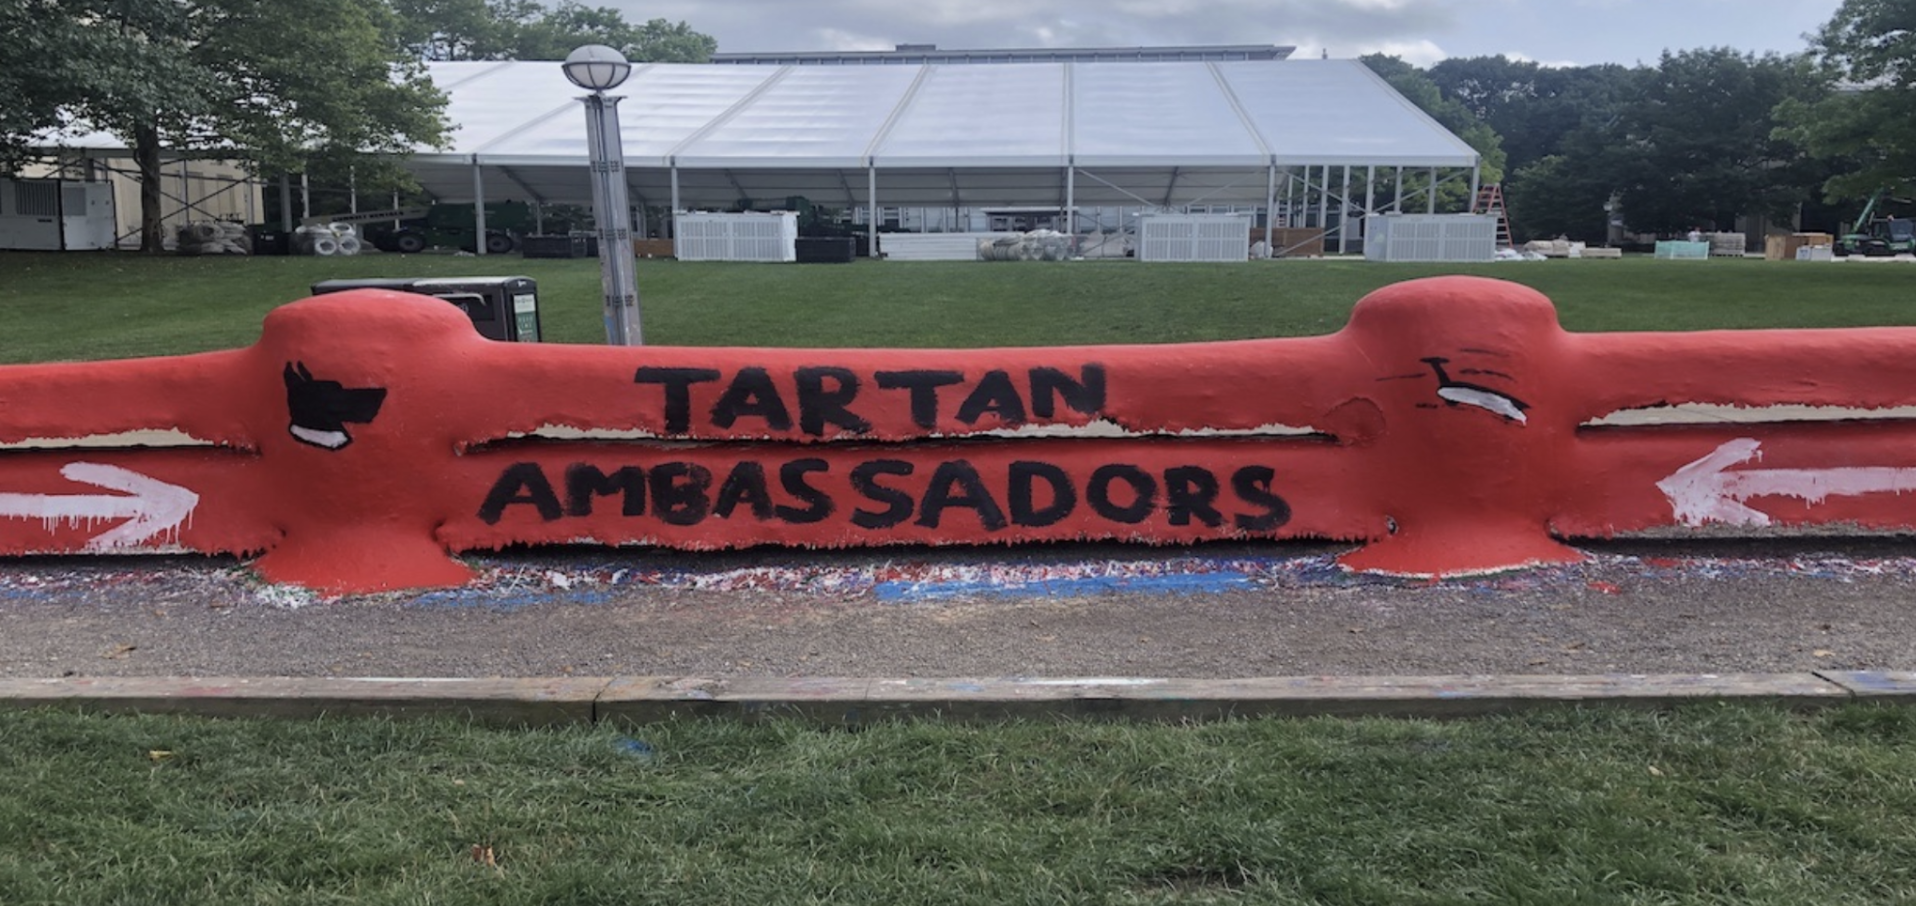 Tartan Ambassador